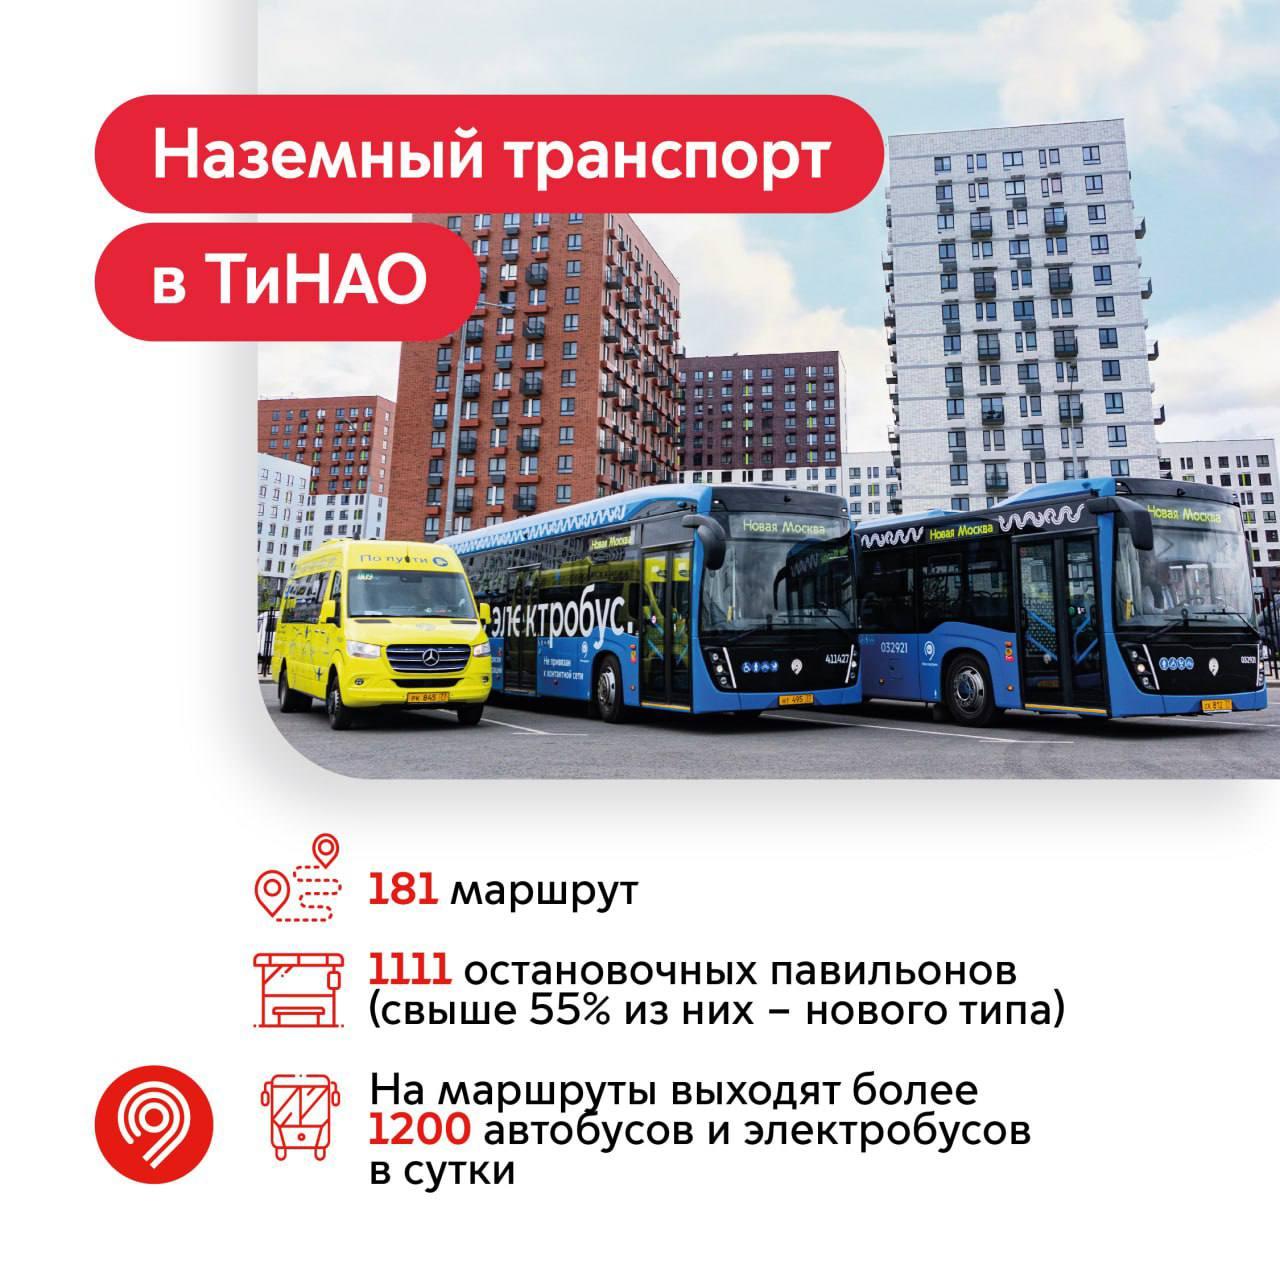 Современный экологичный транспорт появился в том числе и в Новой Москве (ТиНАО)